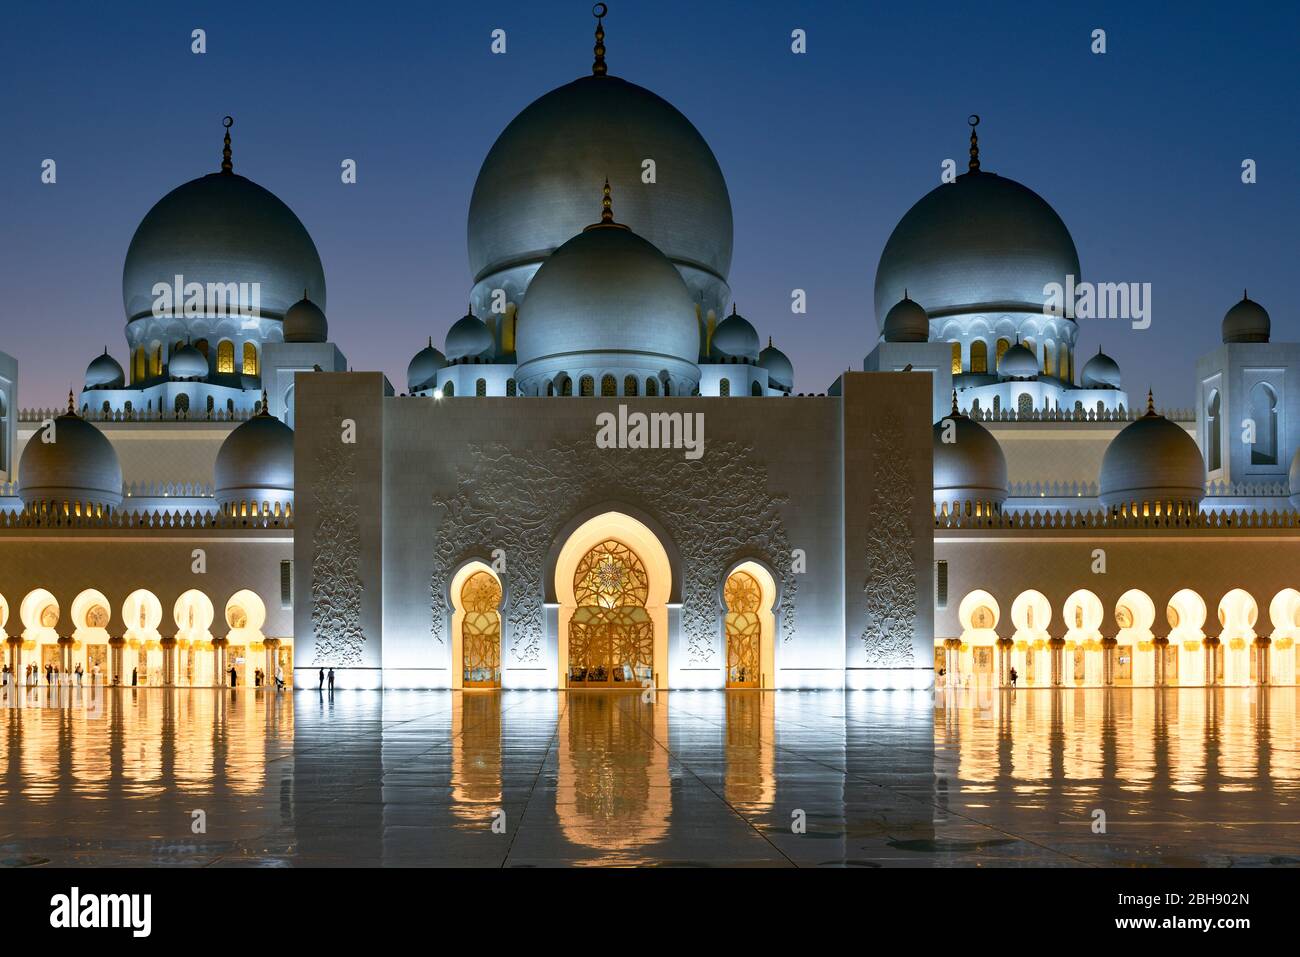 Illuminierte Scheich Zayid Moschee zur blauen Stunde, der Glanz des Marmorbodens kommt besonders gut zur Geltung und lässt die Moschee spiegeln Stock Photo